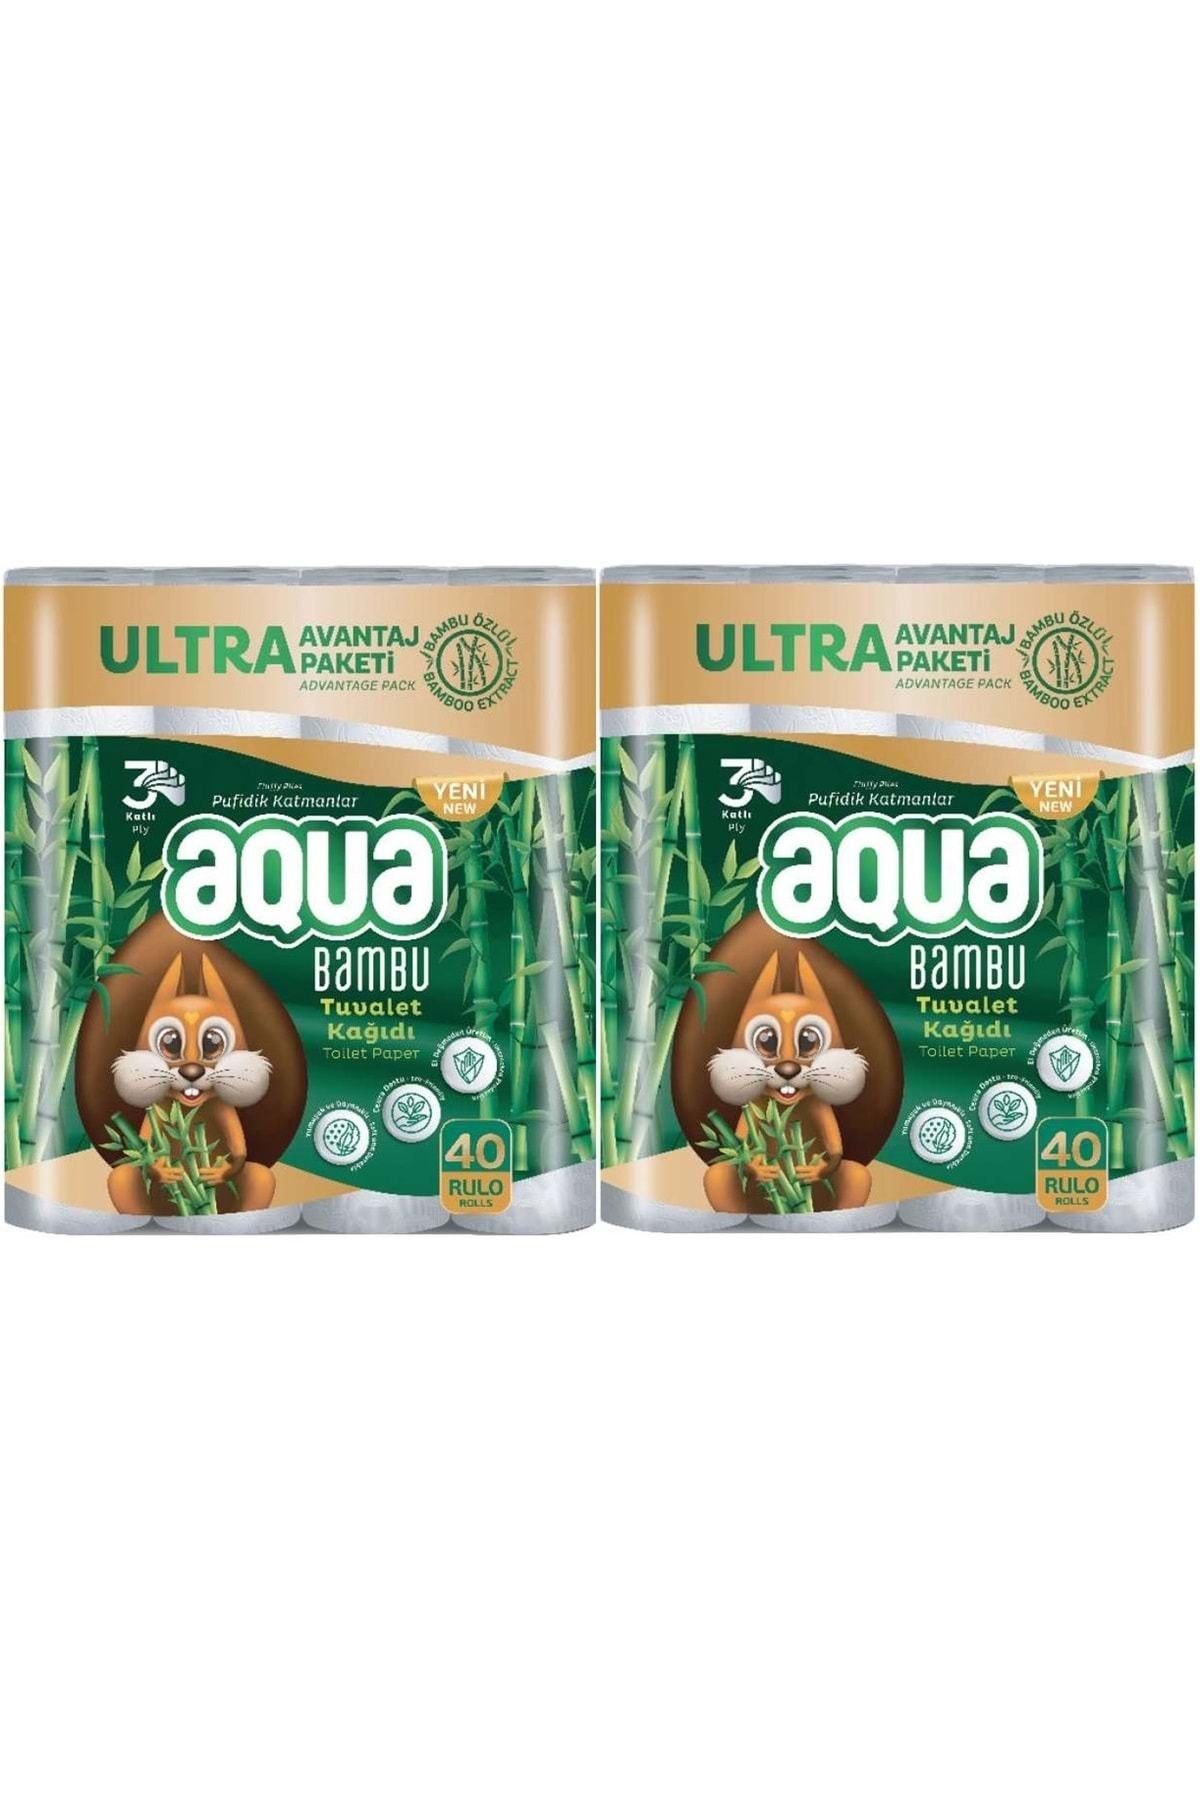 Aqua Tuvalet Kağıdı 3 Katlı 80 Li Set Bambu Ultra Avantaj Pk (2PK*40)